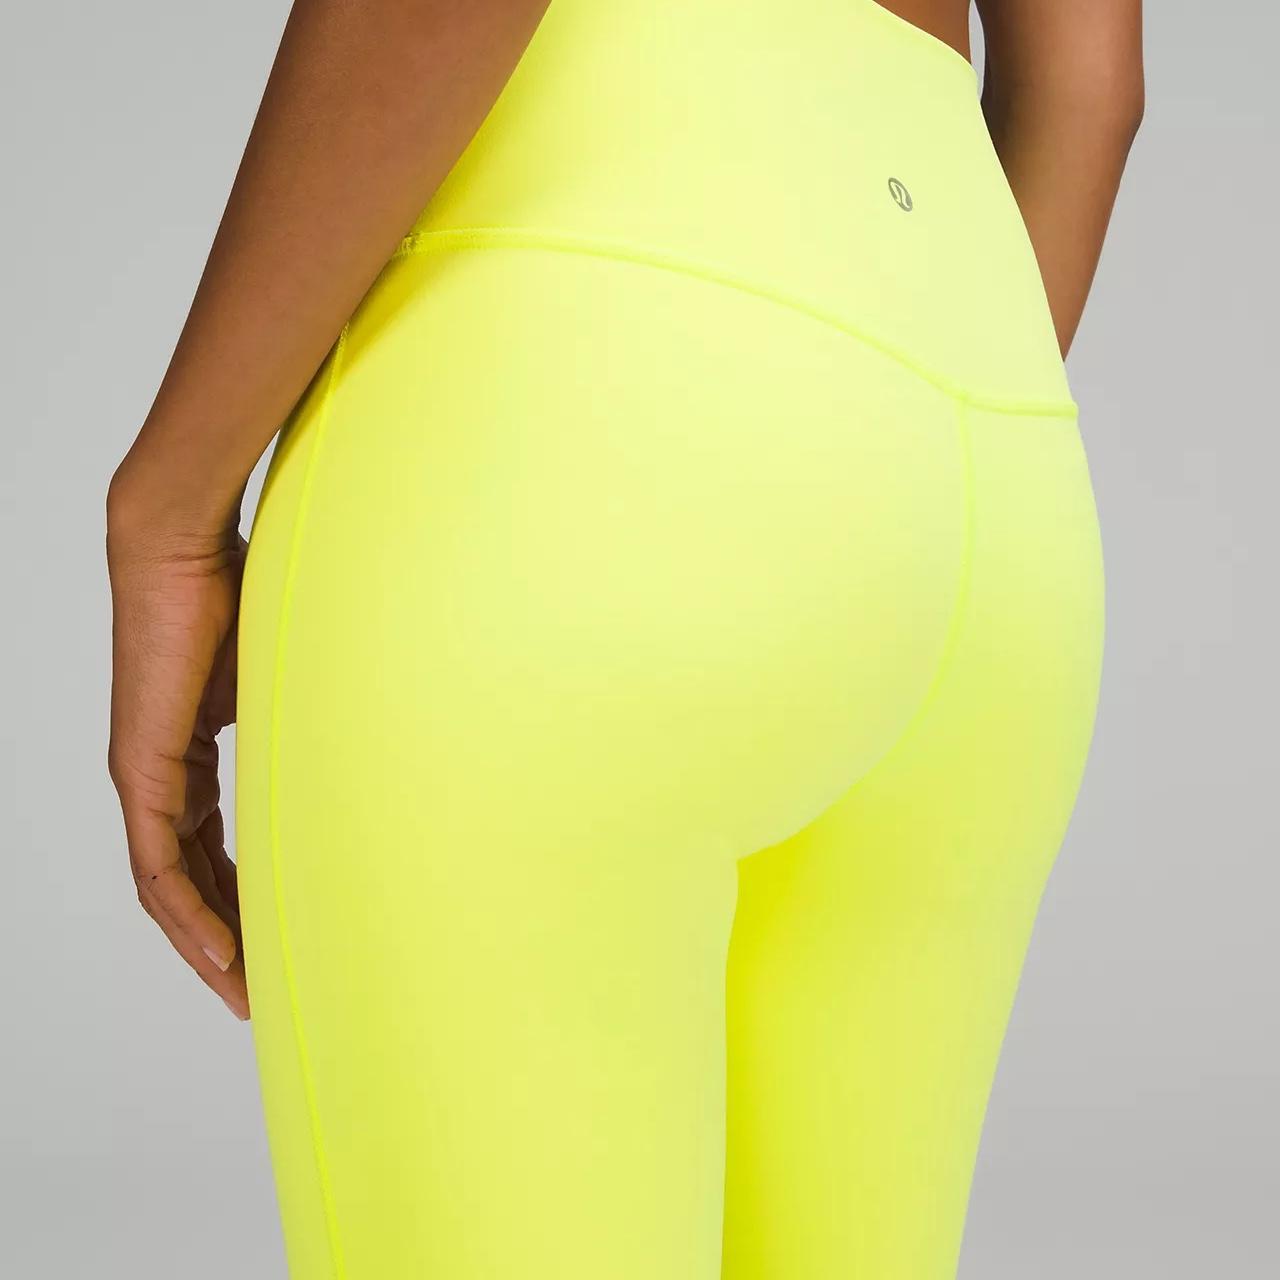 Lululemon early extension high rise leggings in honey lemon heathered Size  4 | eBay